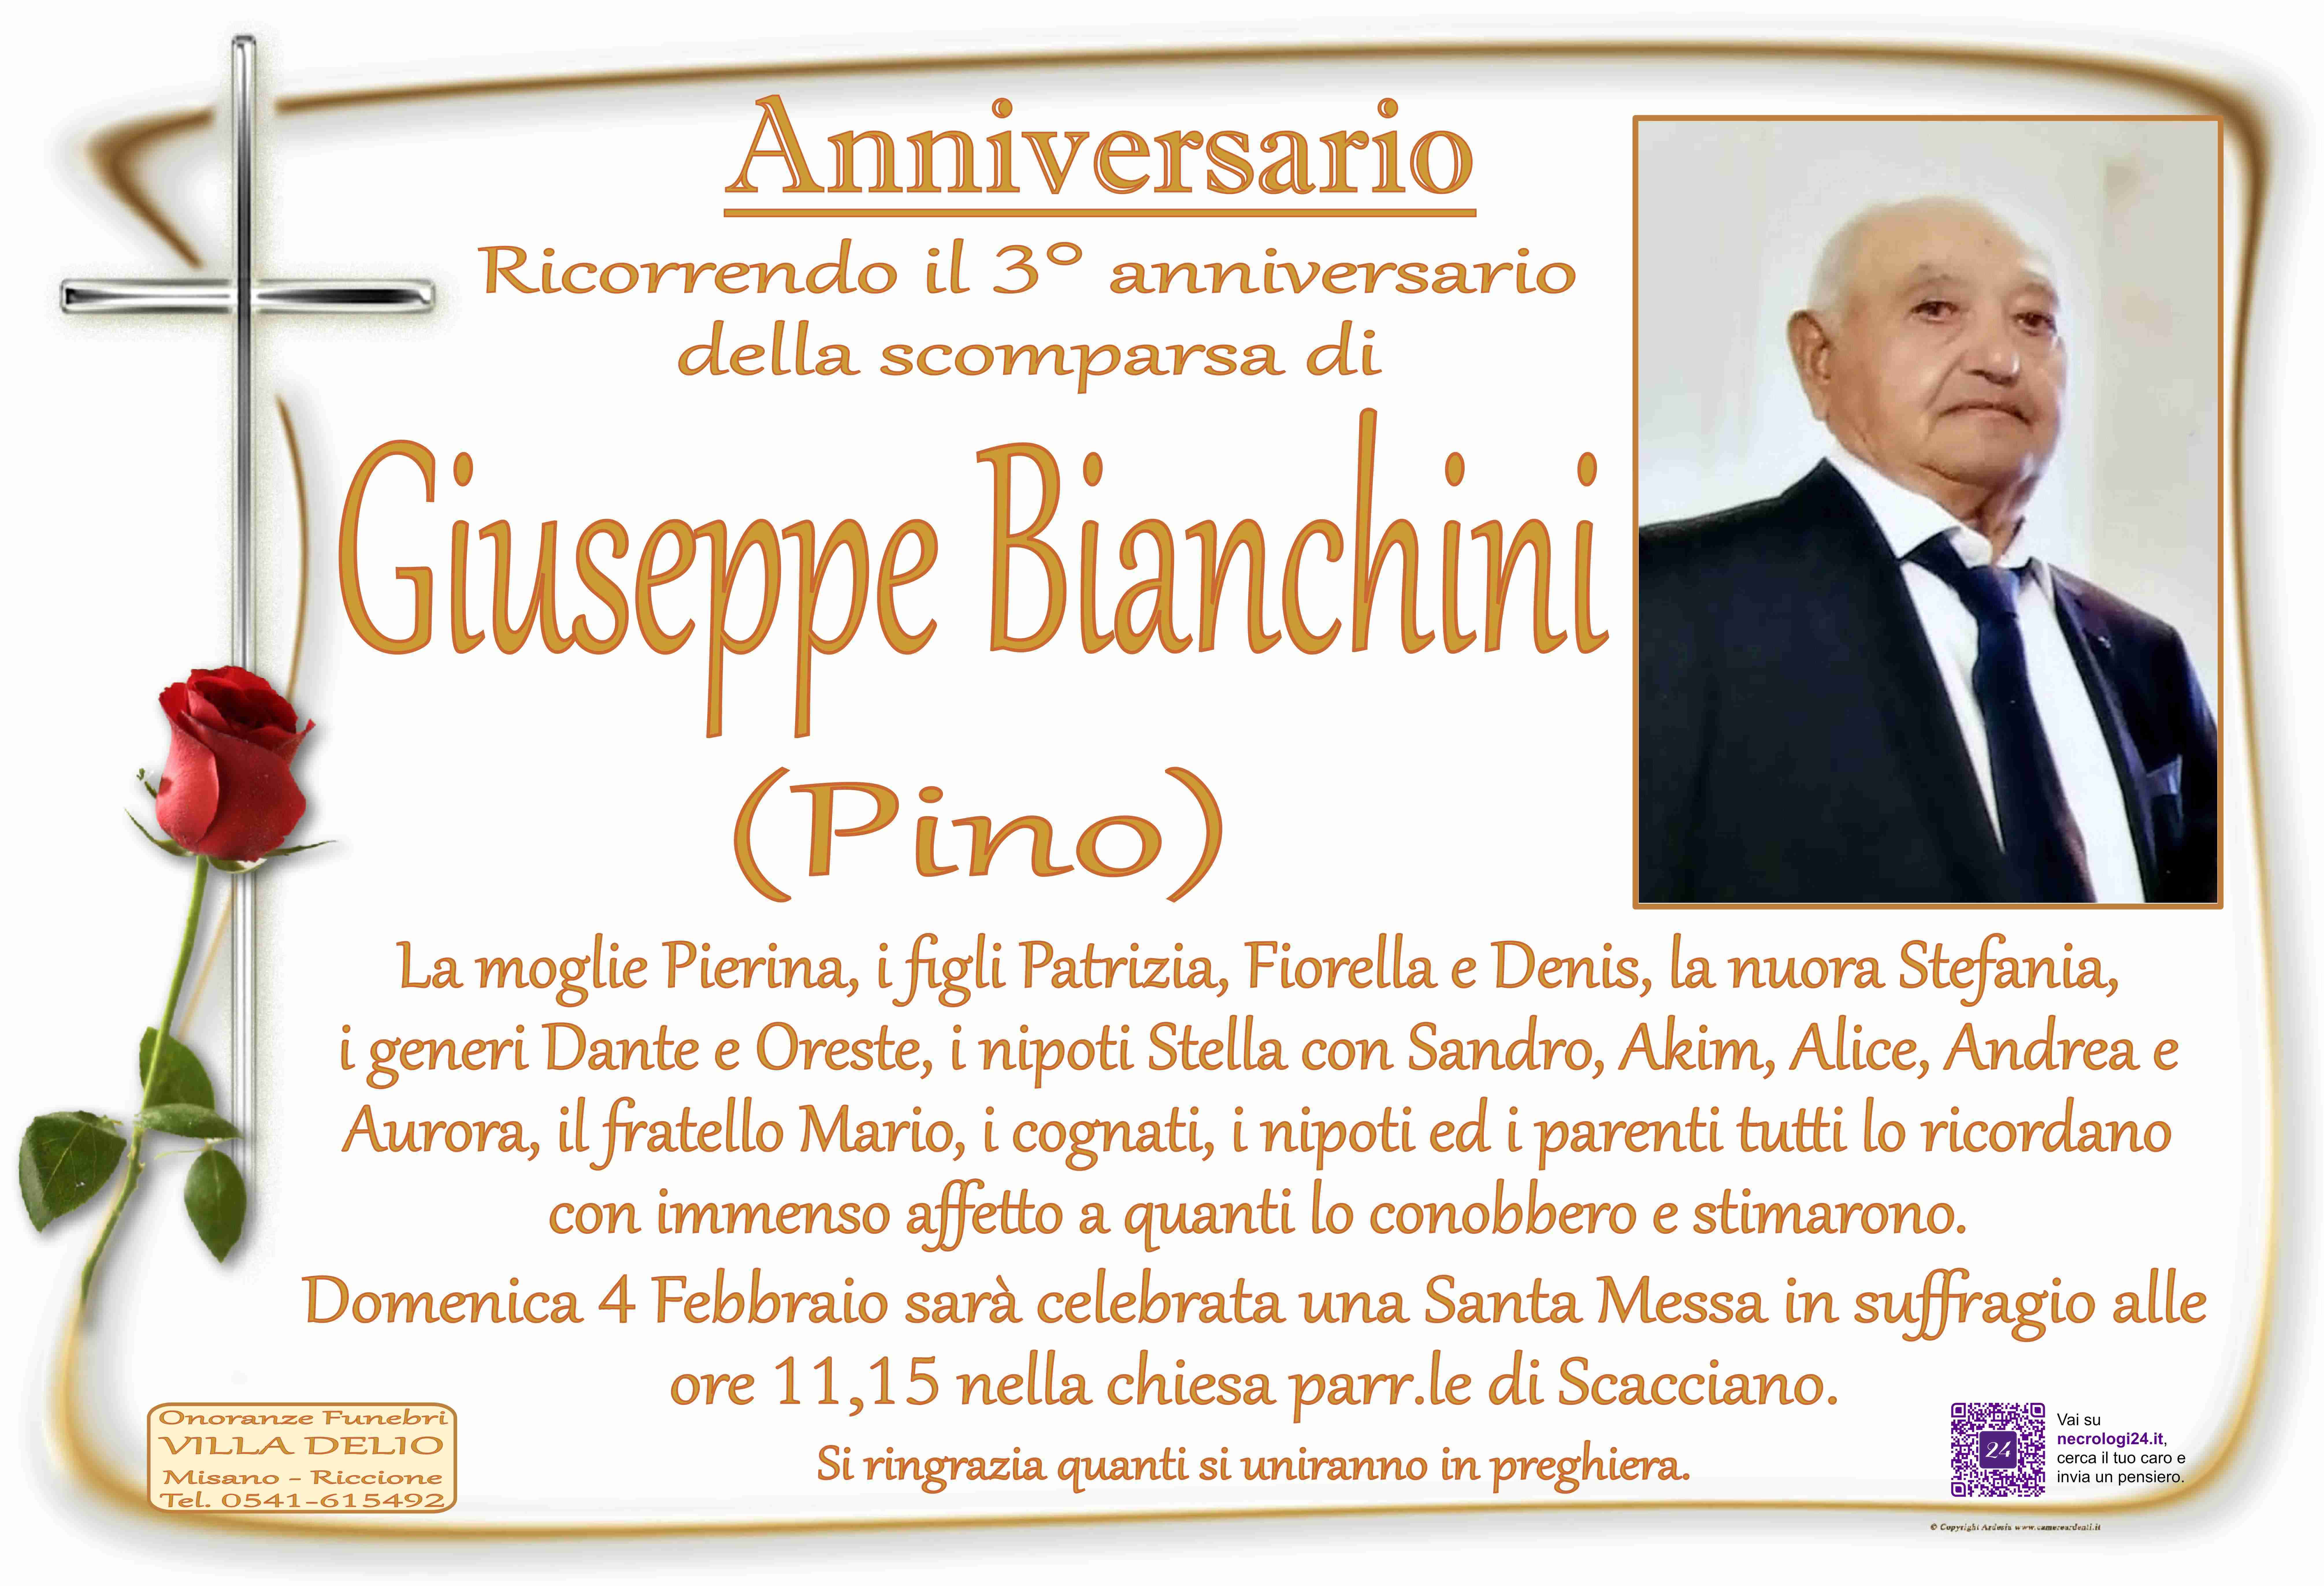 Giuseppe Bianchini (Pino)